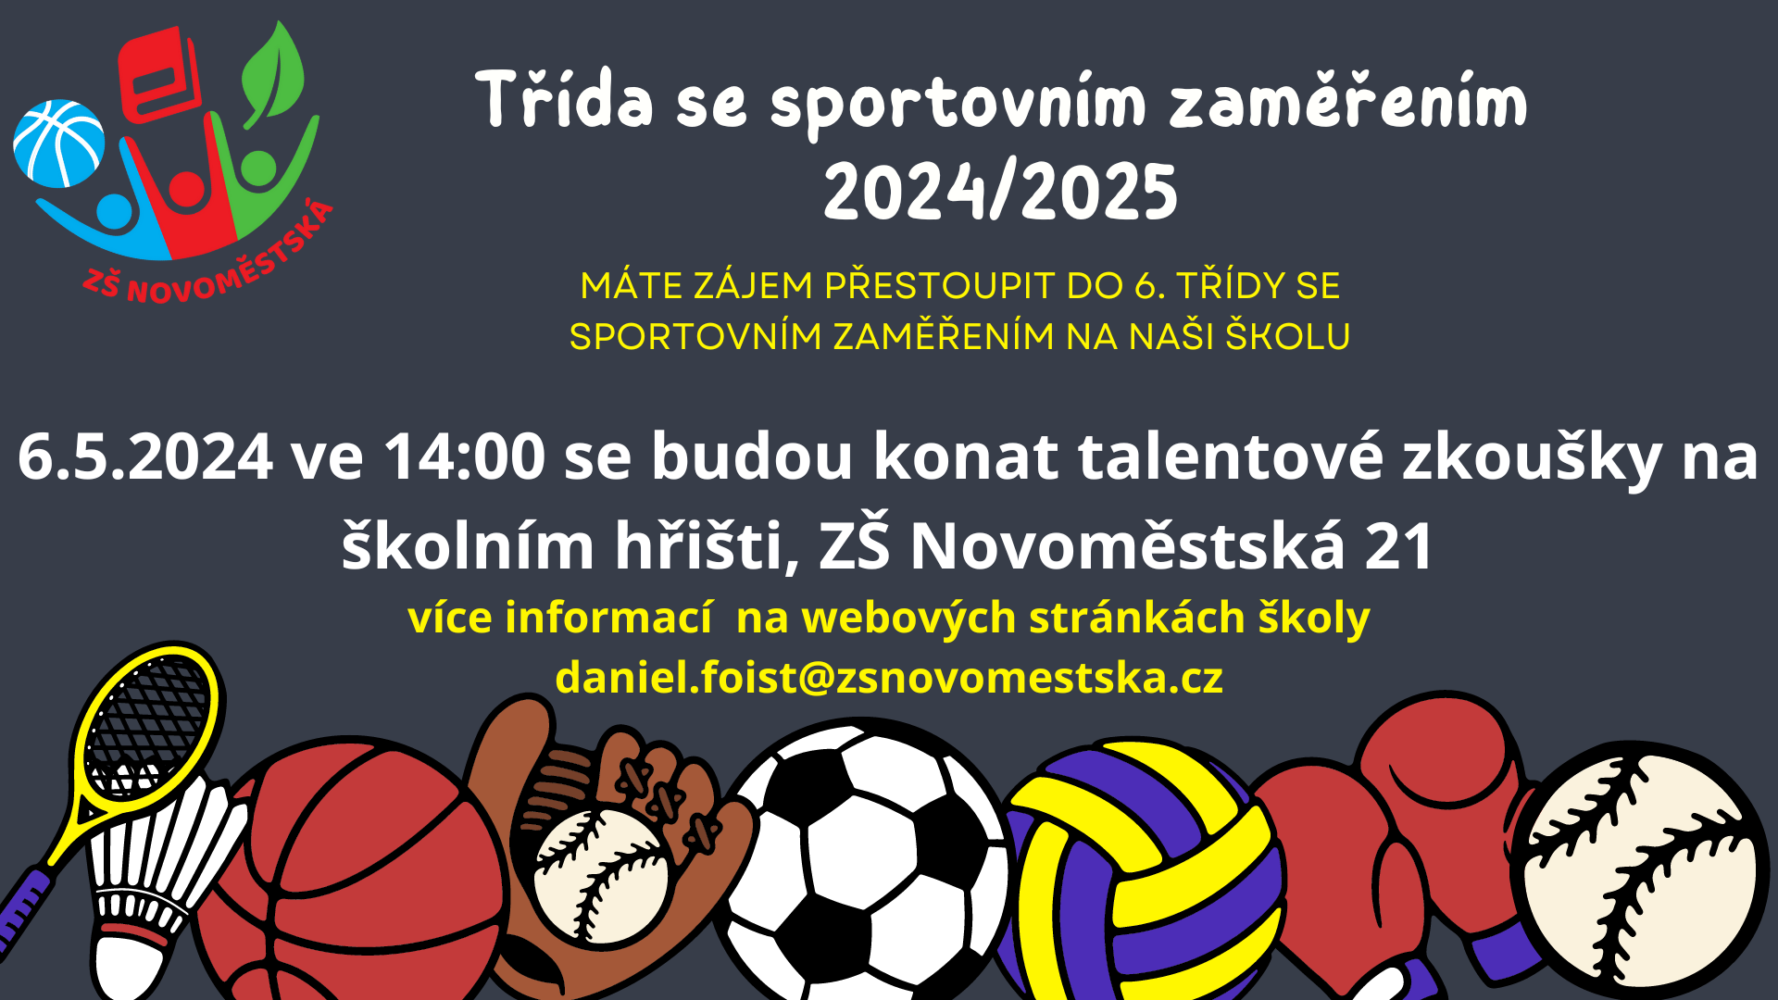 Talentové zkoušky – 6. třída se sportovním zaměřením 2024/2025